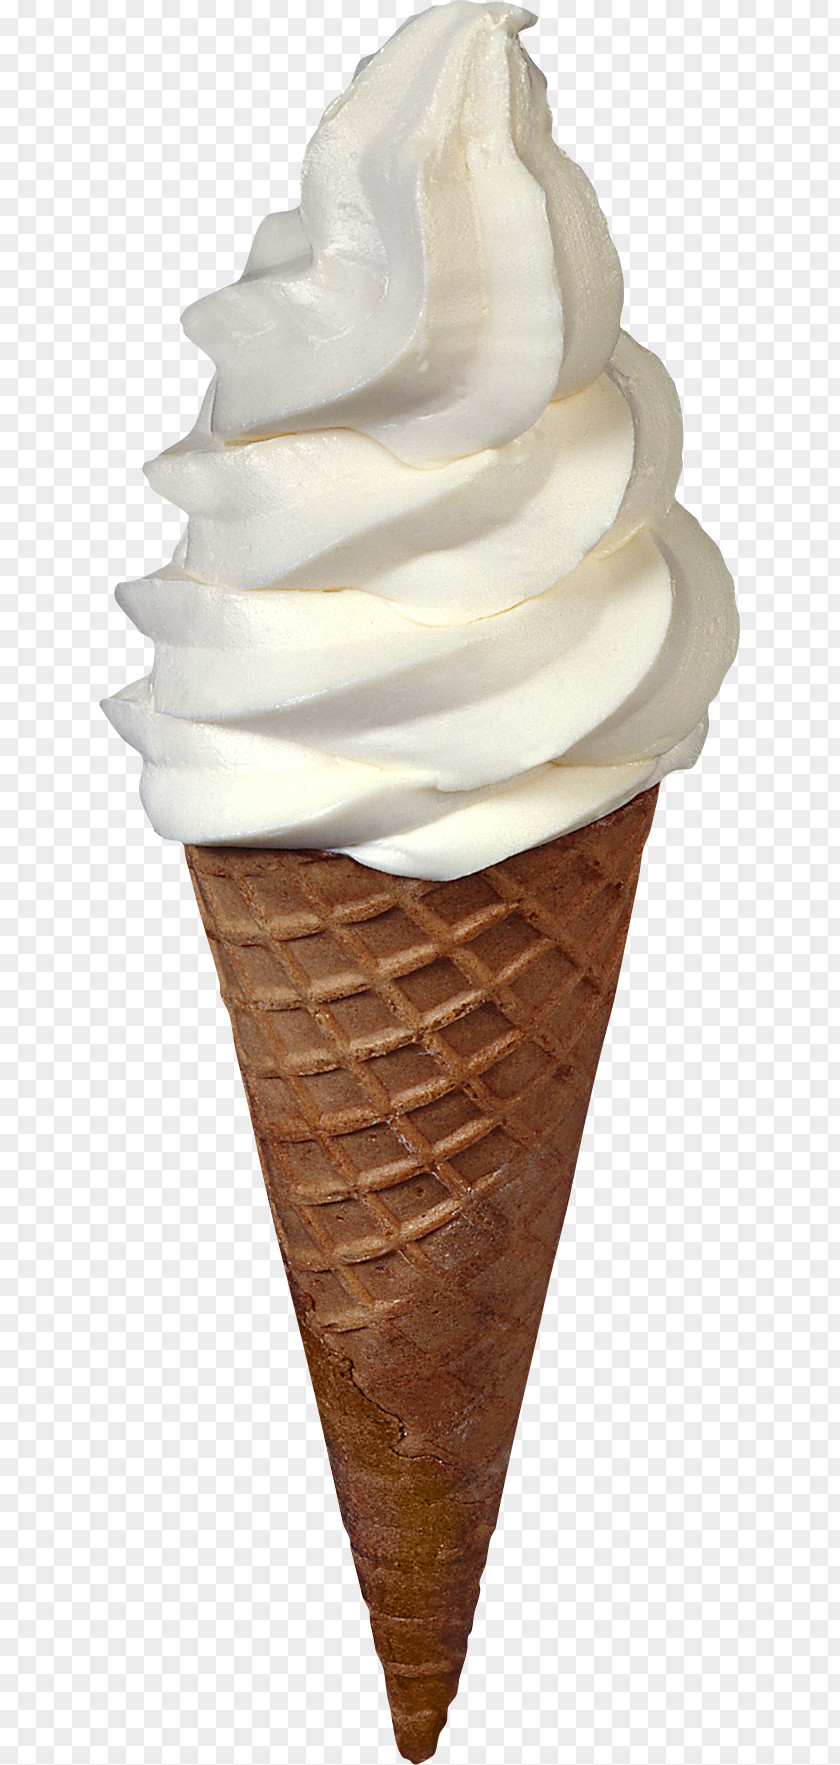 Ice Cream Image Cone Neapolitan Sundae PNG